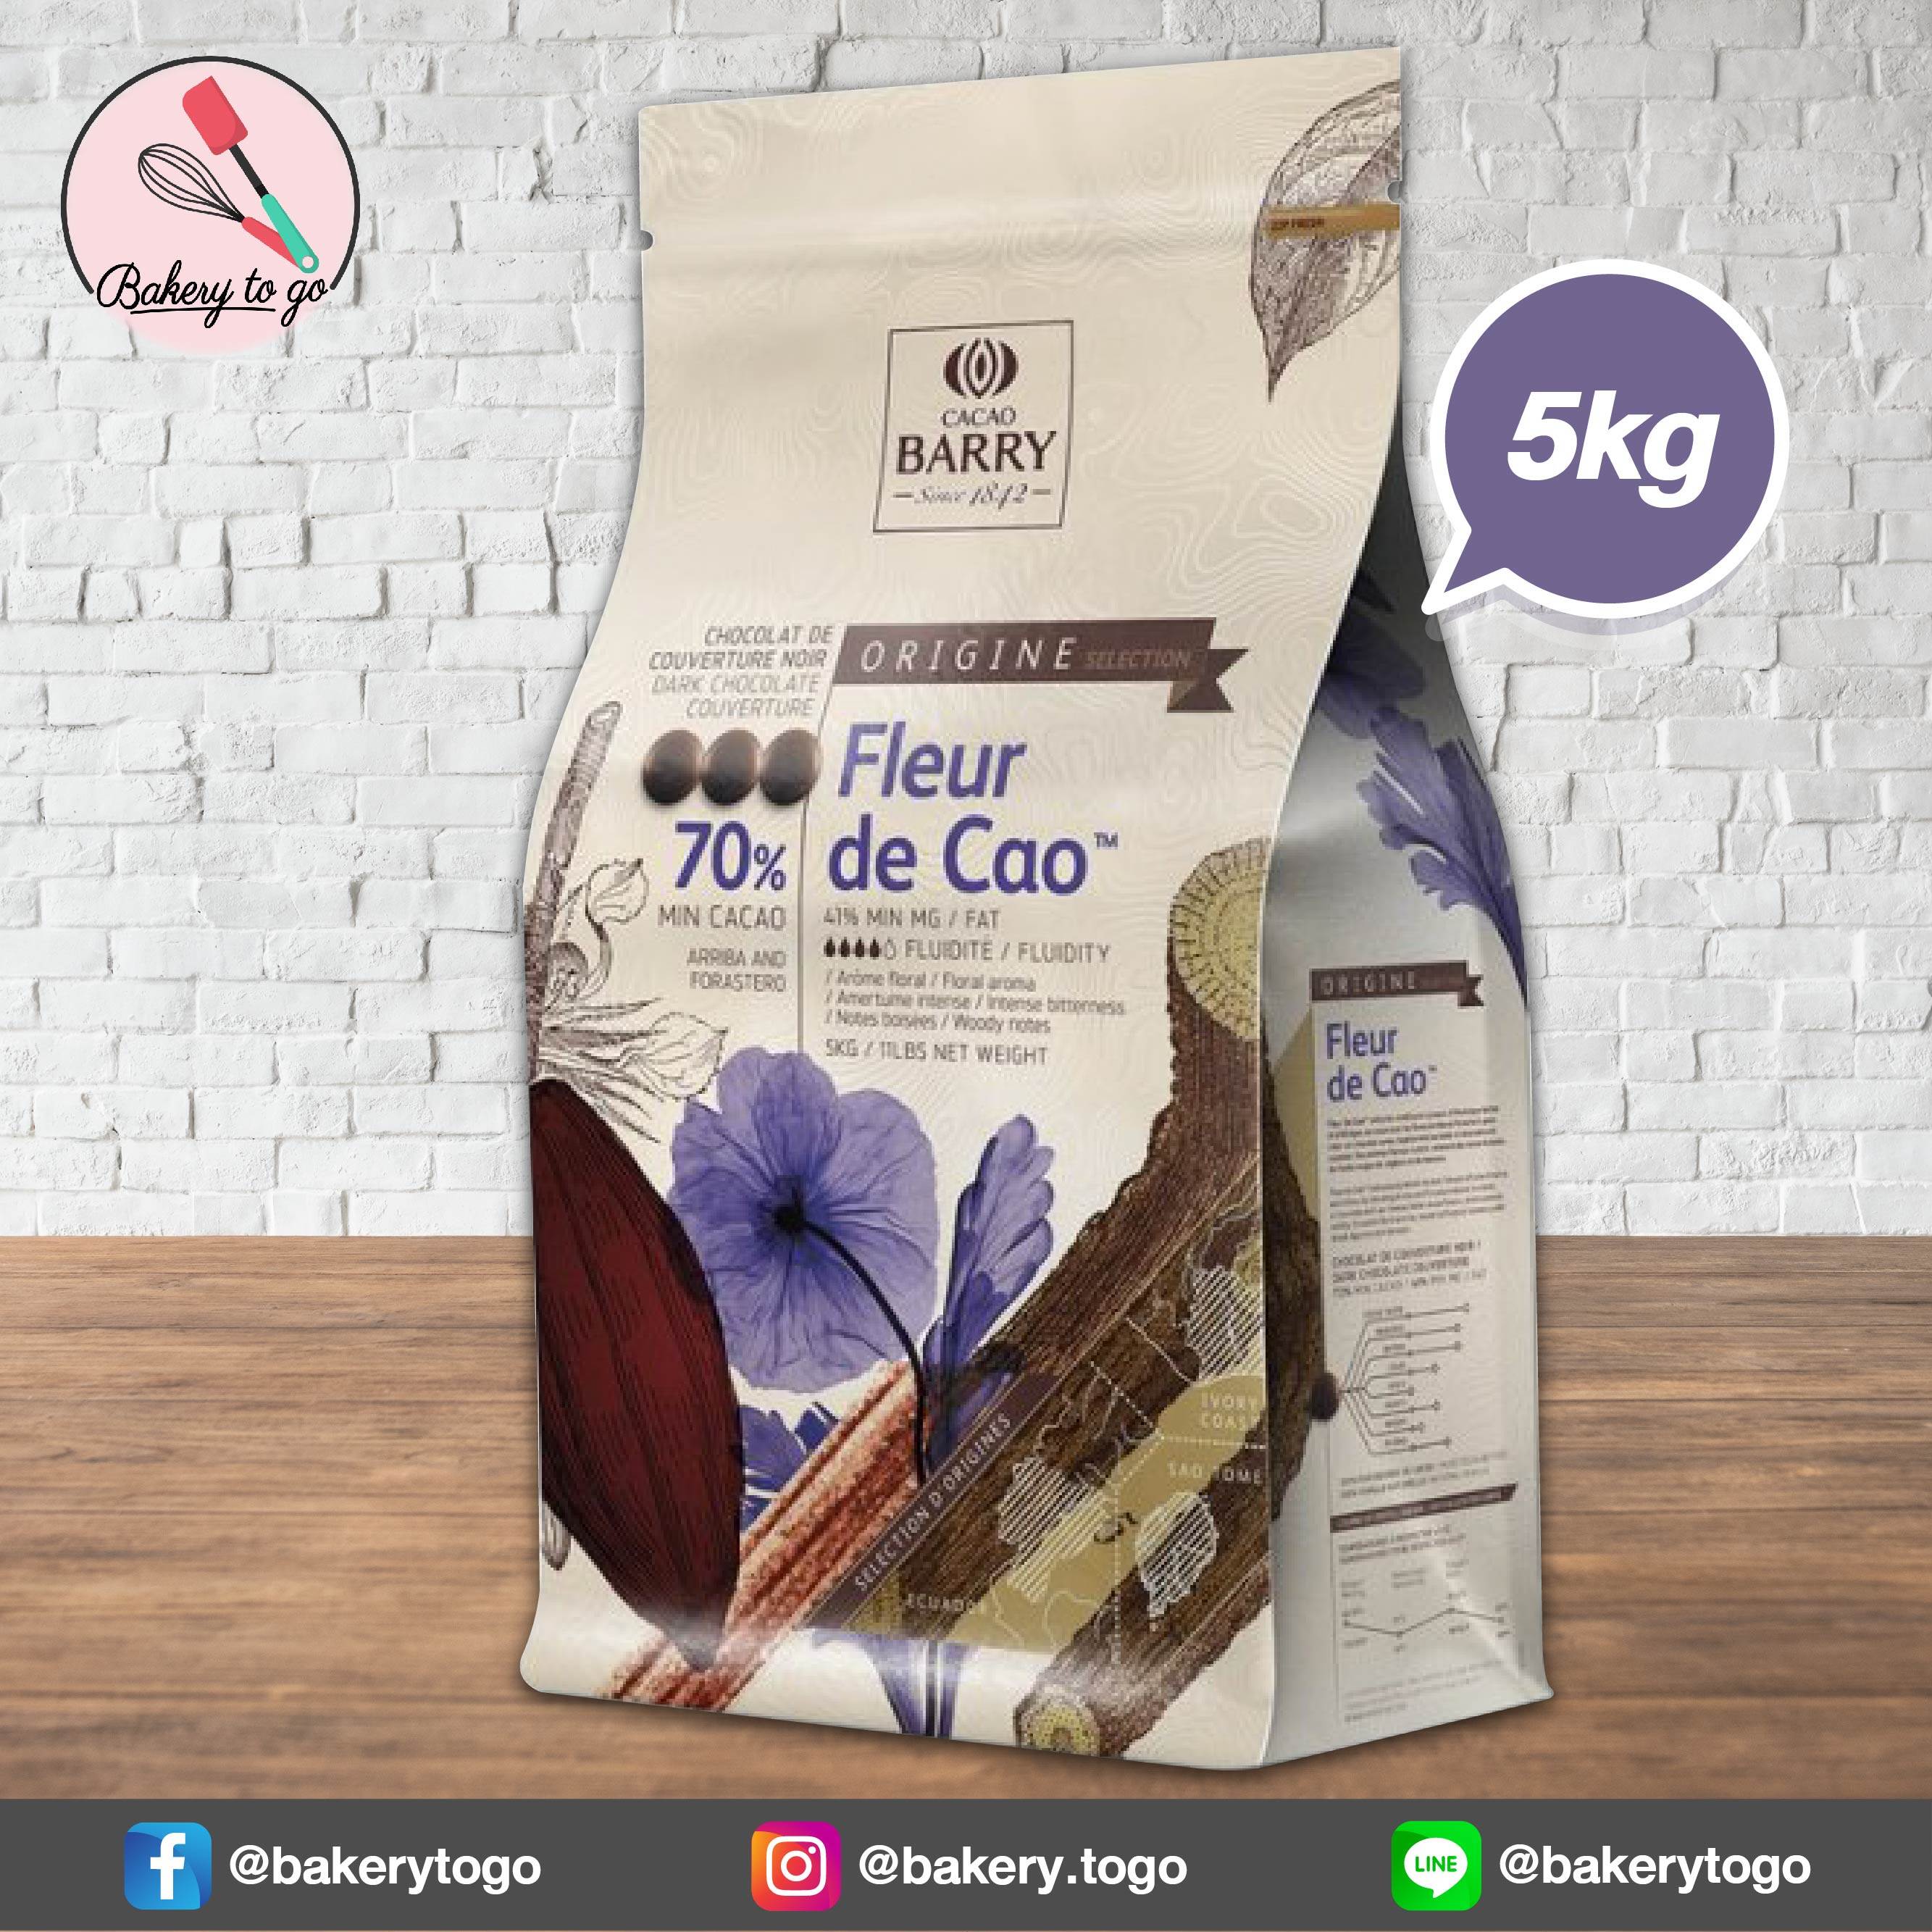 Bakery to Go ช็อคโกแลต Cacao Barry Fleur de Cao 70% ขนาด 5kg **จัดส่งฟรี!!! โดยรถเย็น**